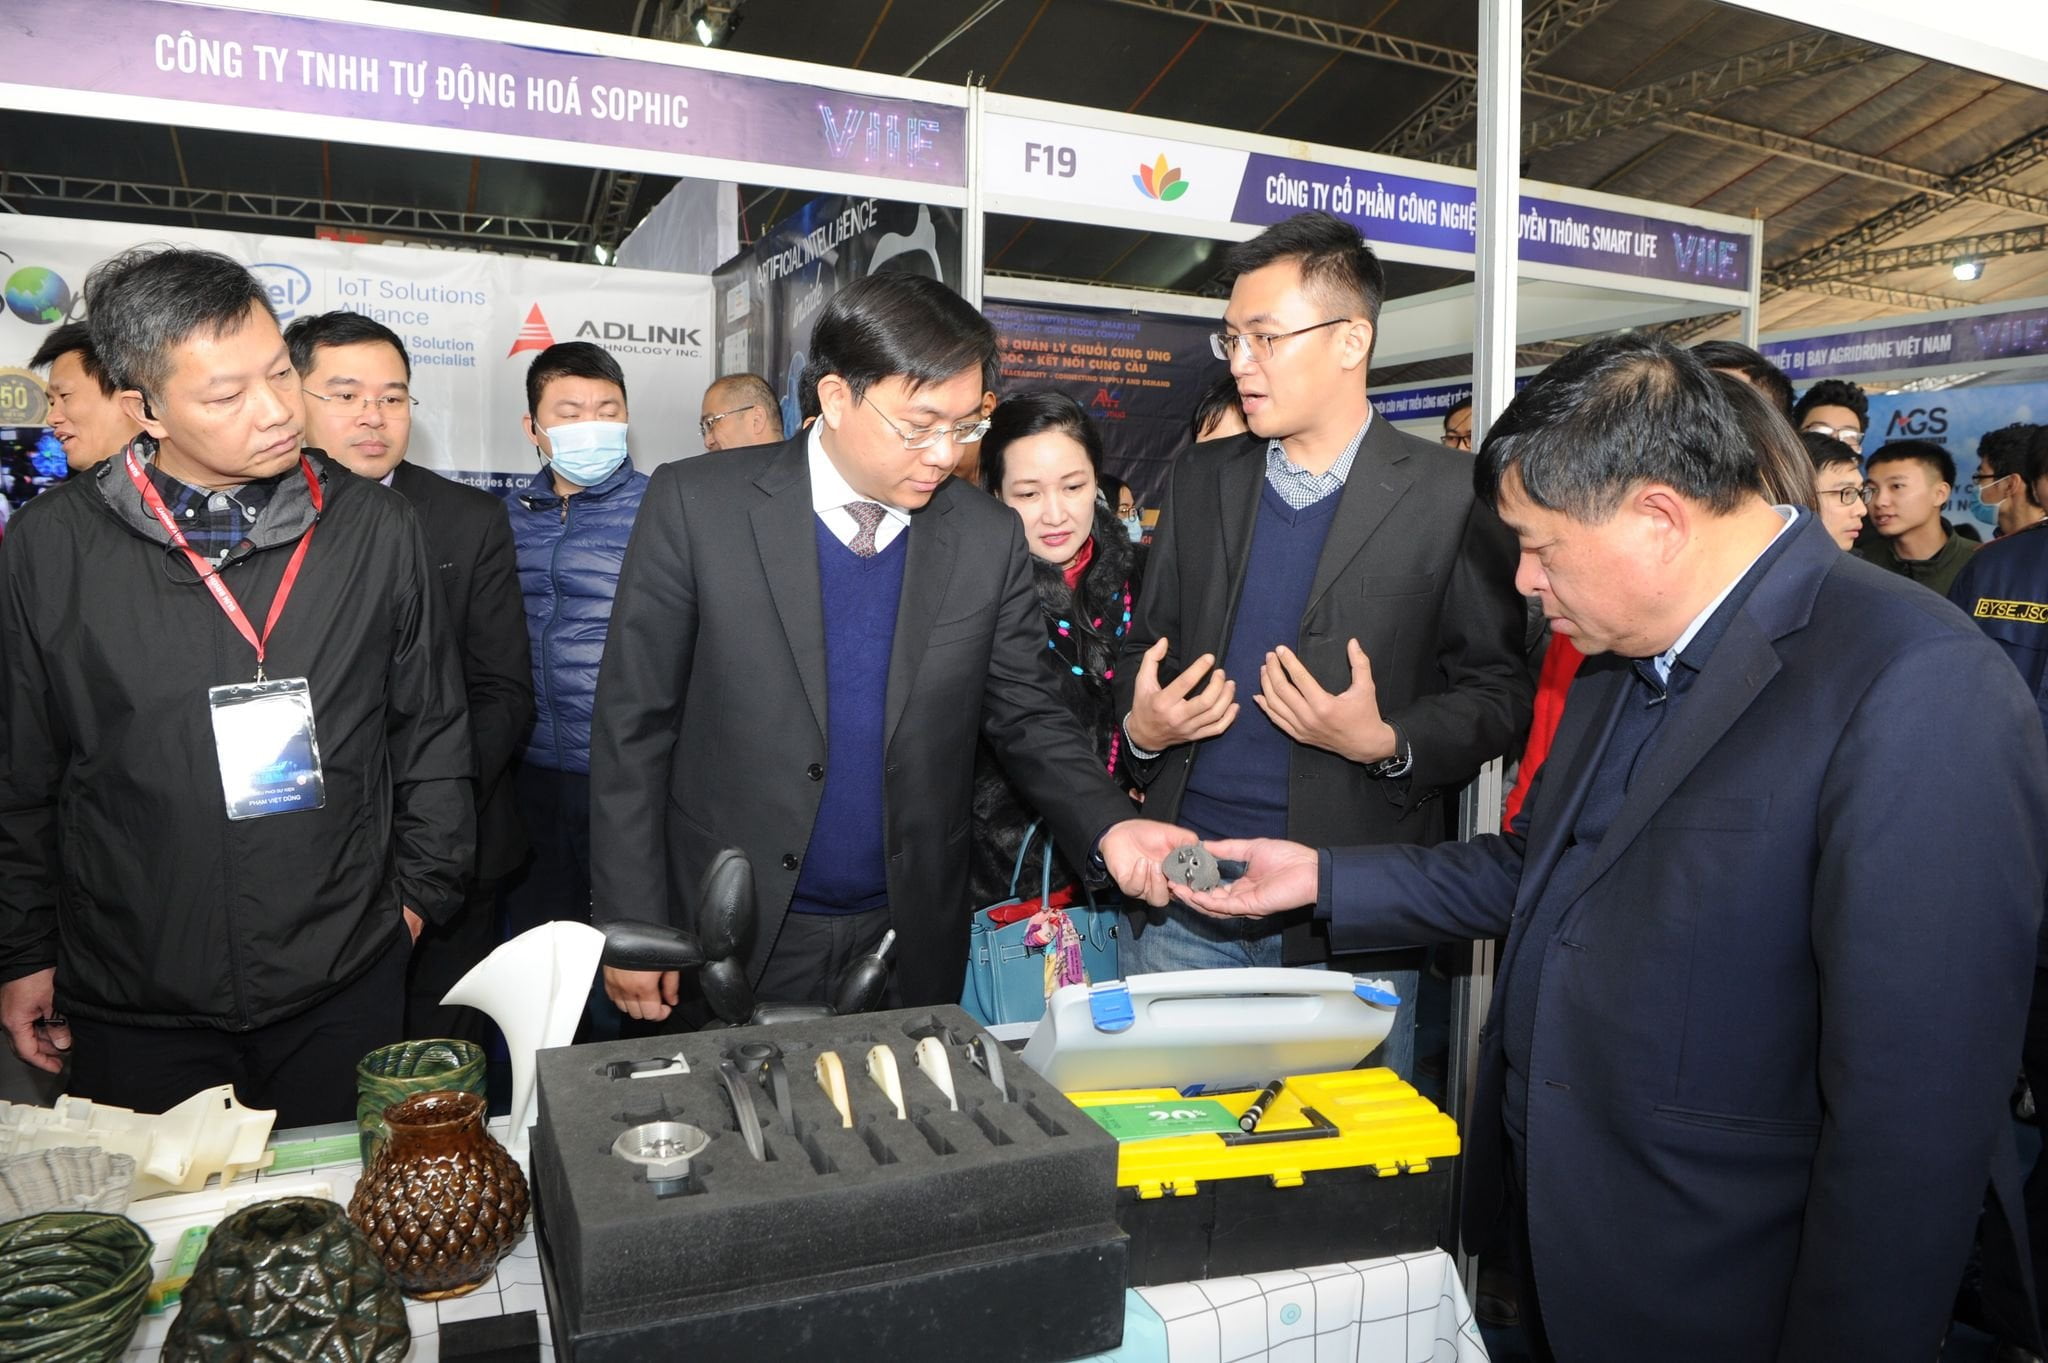 Bộ trưởng Bộ kế hoạch đầu tư Nguyễn Chí Dũng ghé thăm gian hàng DIGMAN và nghe chia sẻ về công nghệ in 3D